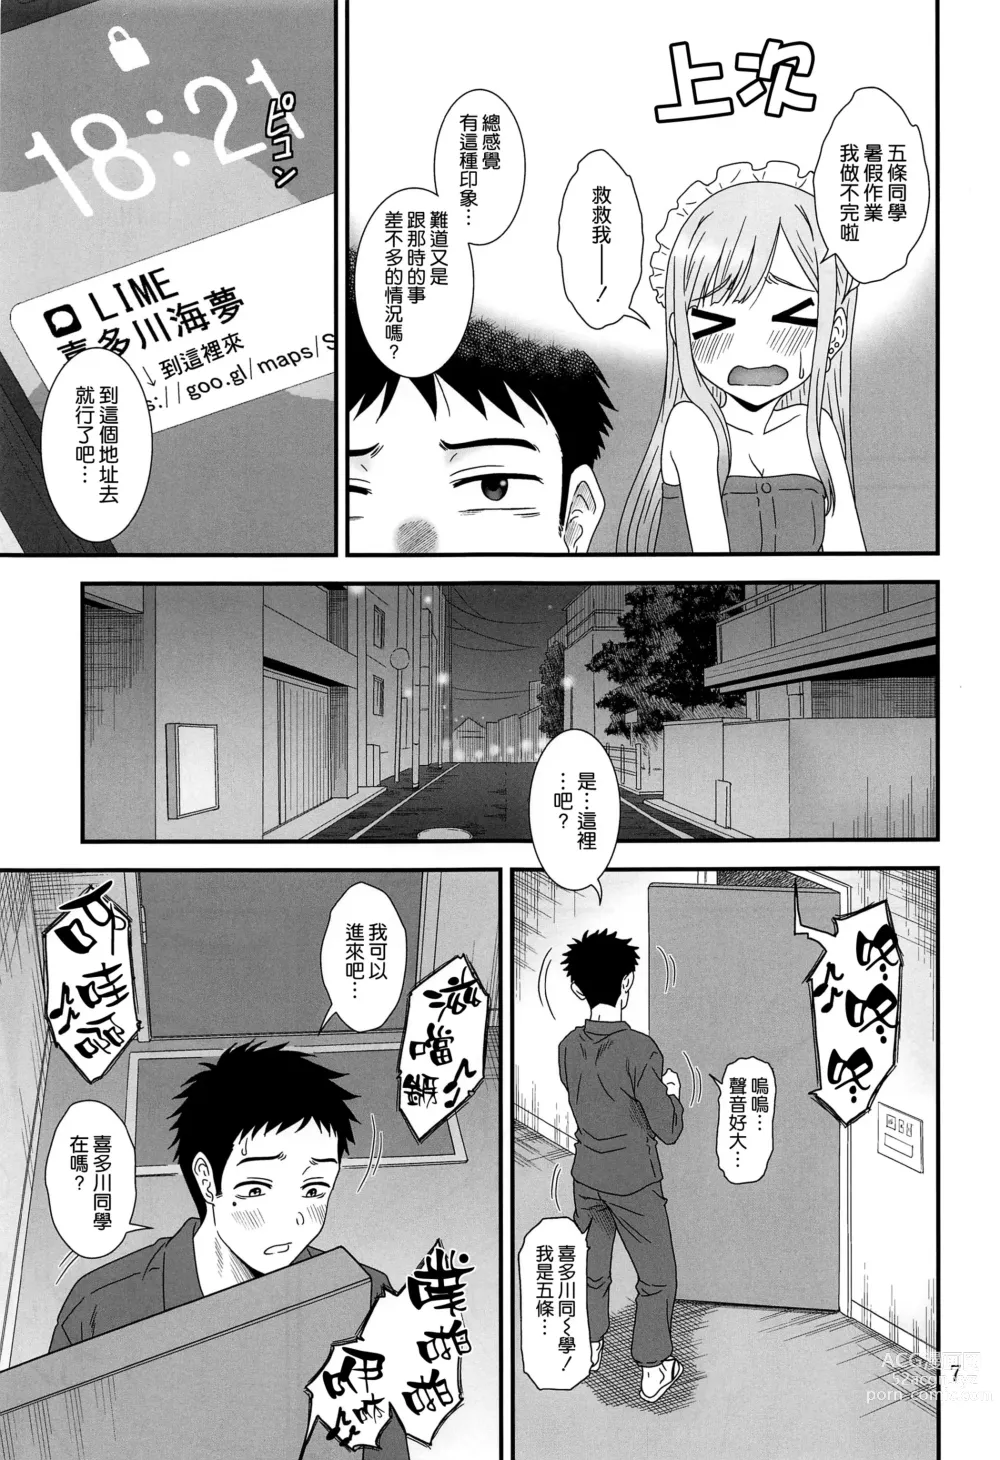 Page 7 of doujinshi Kugutsu Mawashi